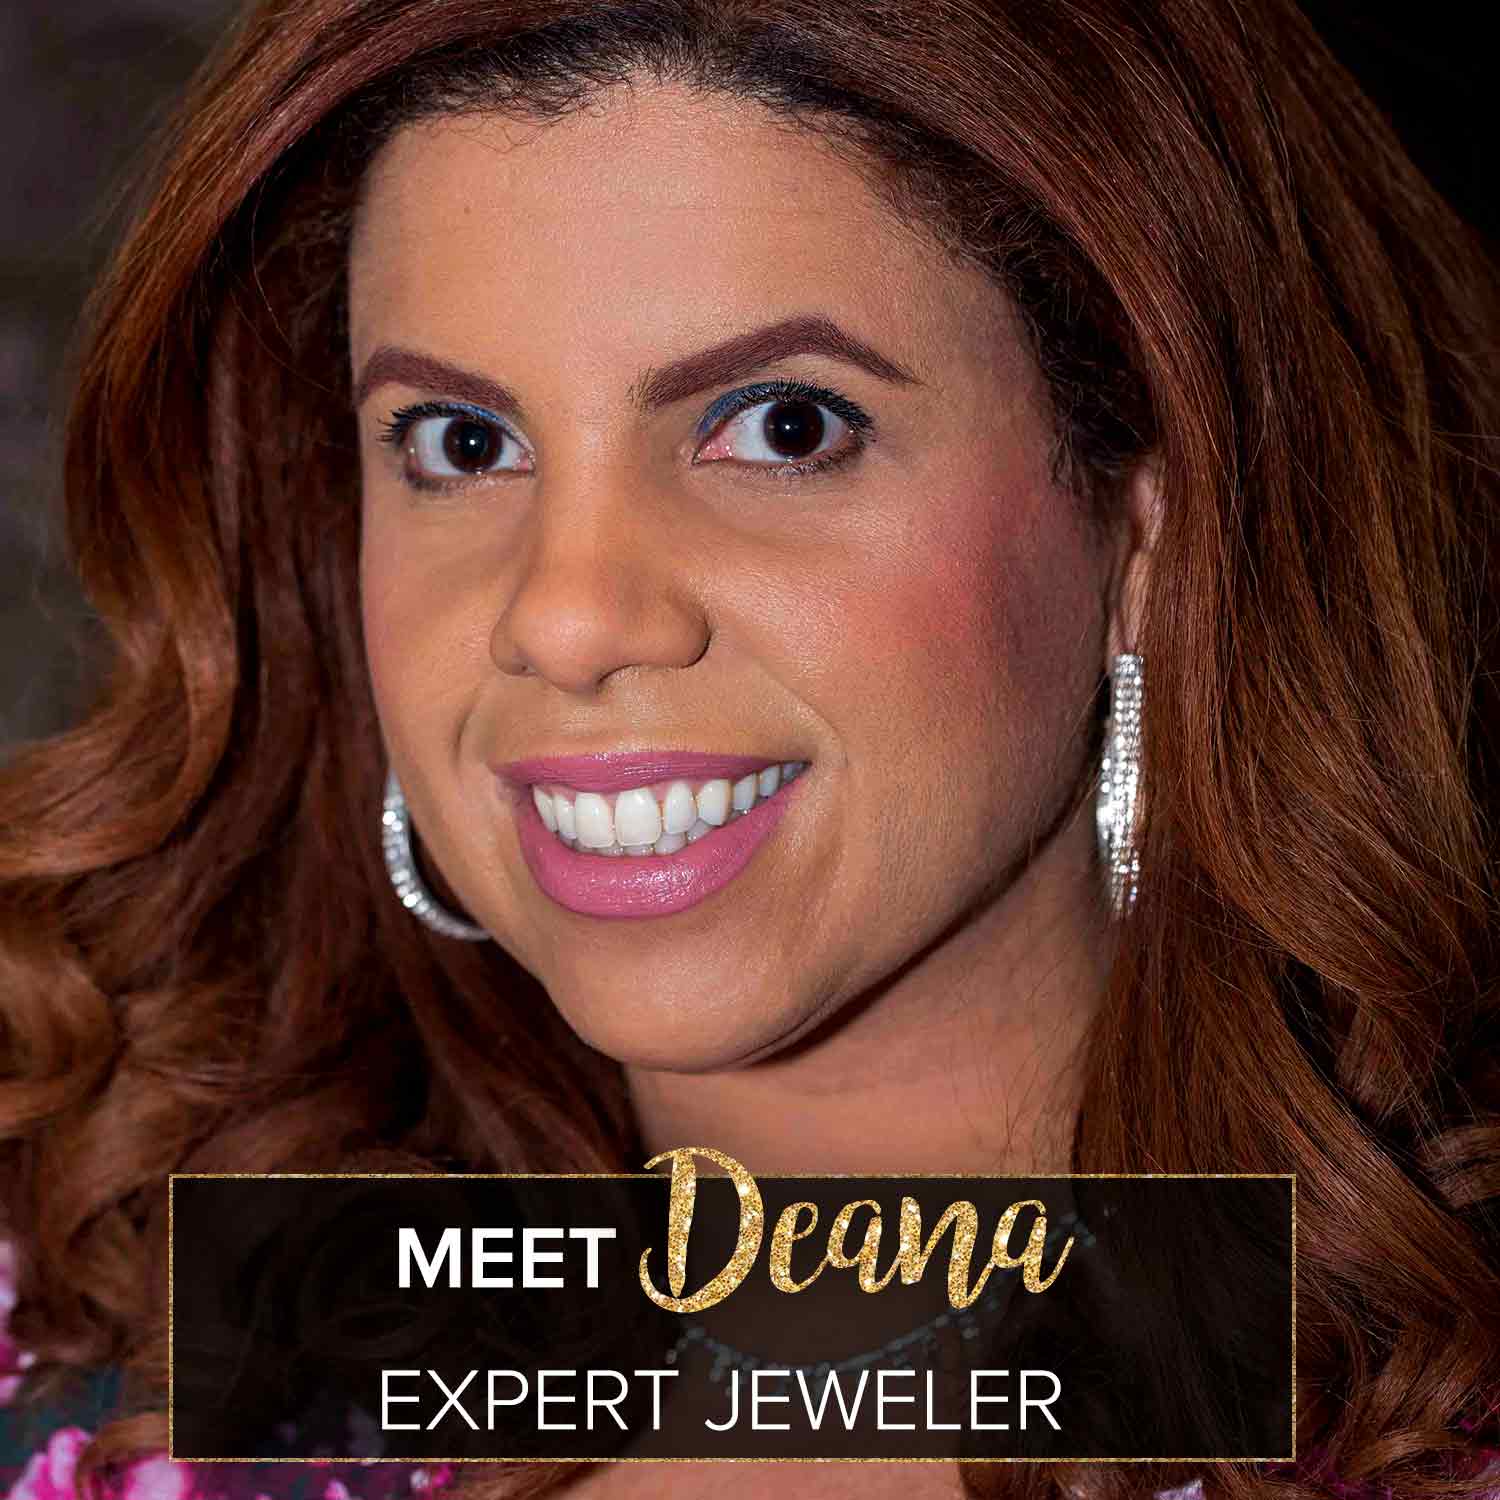 Meet Our expert Jeweler, Deana